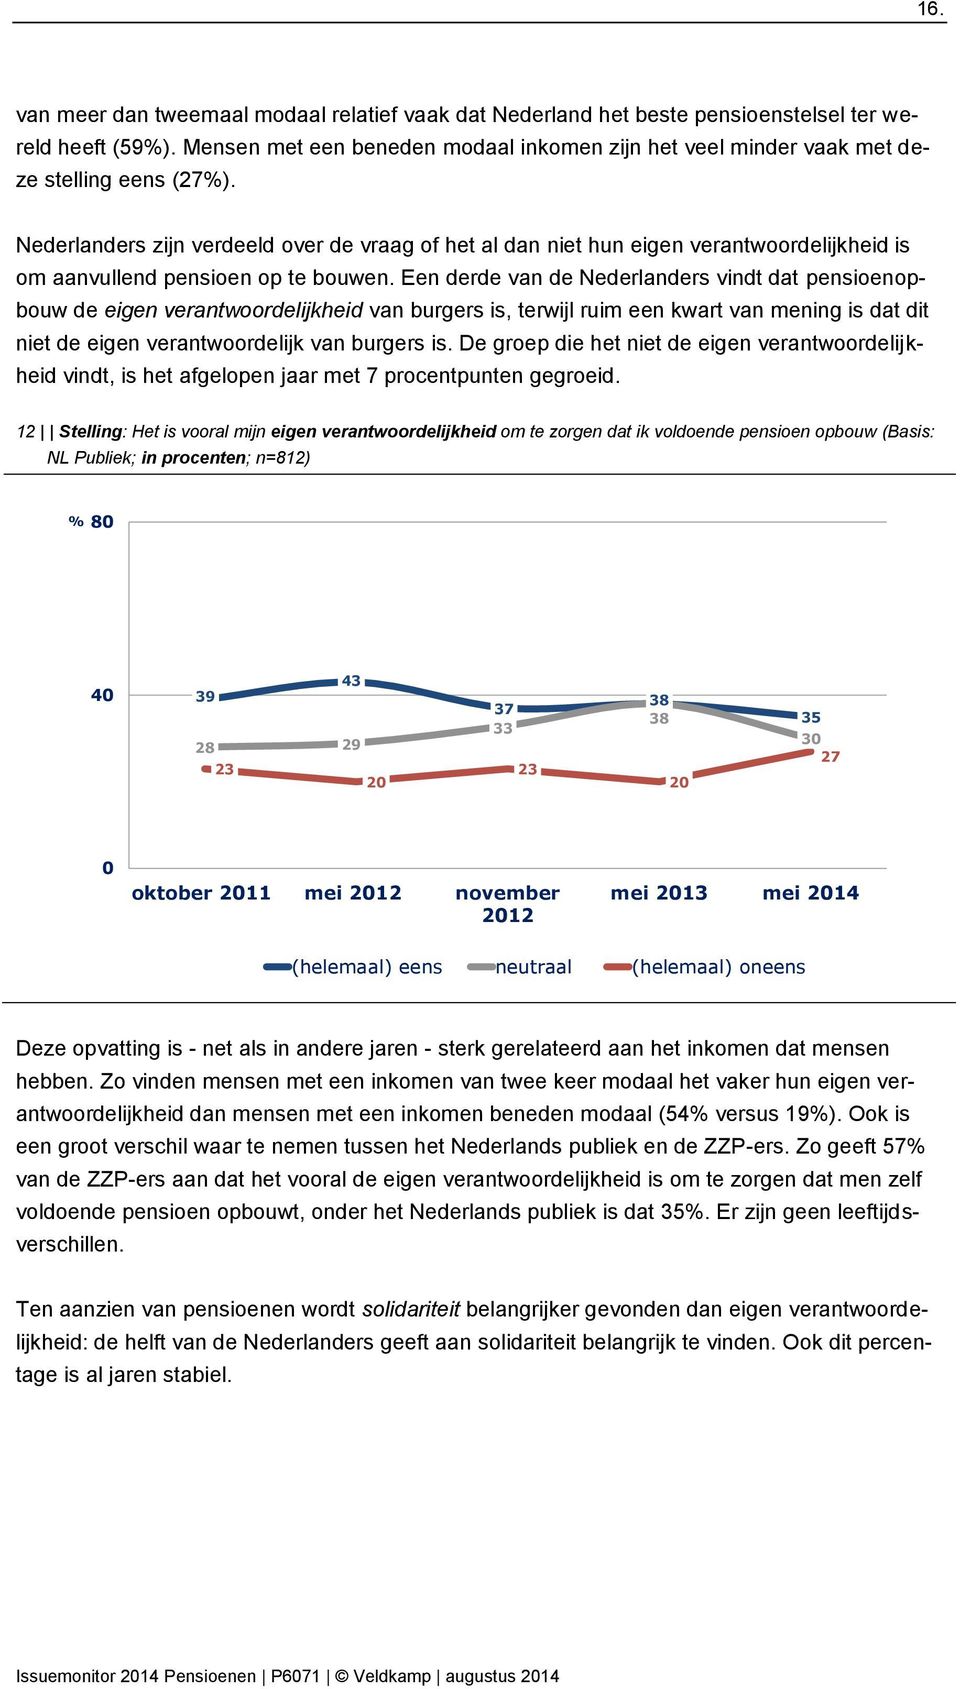 Nederlanders zijn verdeeld over de vraag of het al dan niet hun eigen verantwoordelijkheid is om aanvullend pensioen op te bouwen.